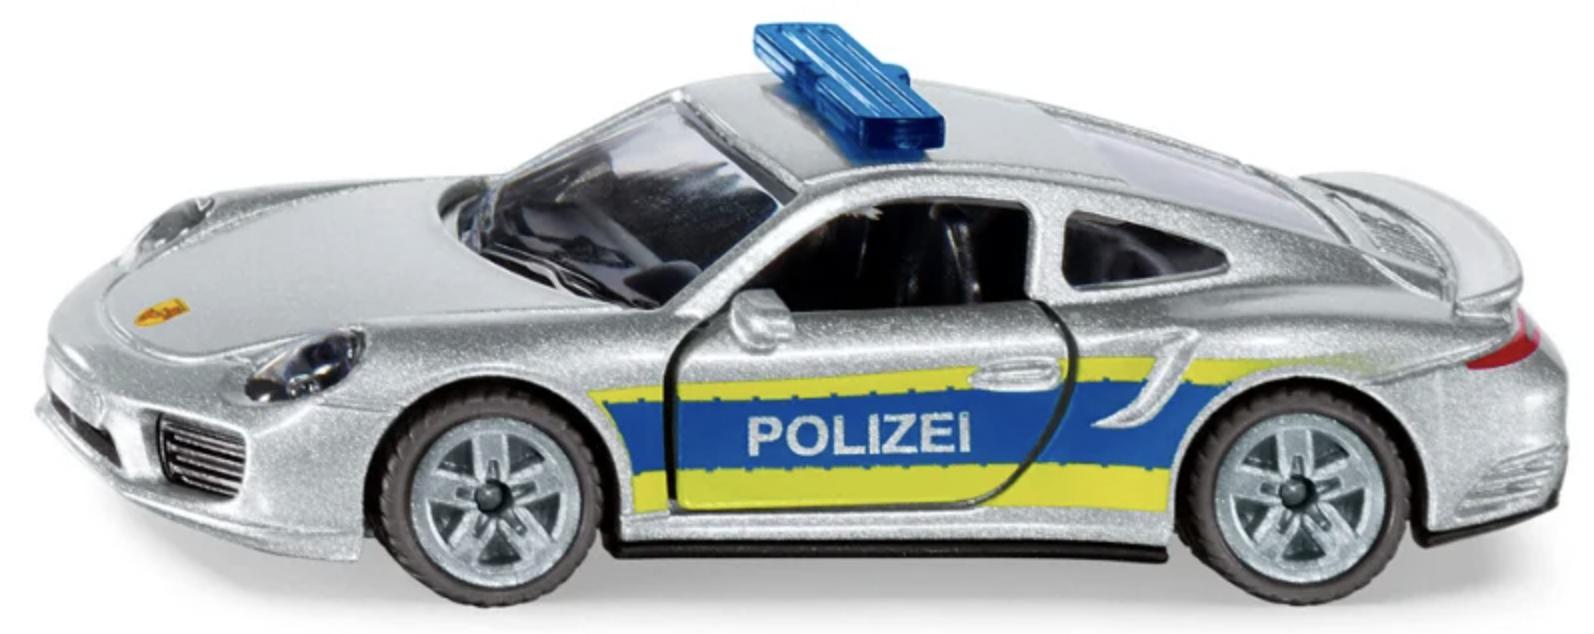 siku 1528 - Porsche 911 Autobahnpolizei